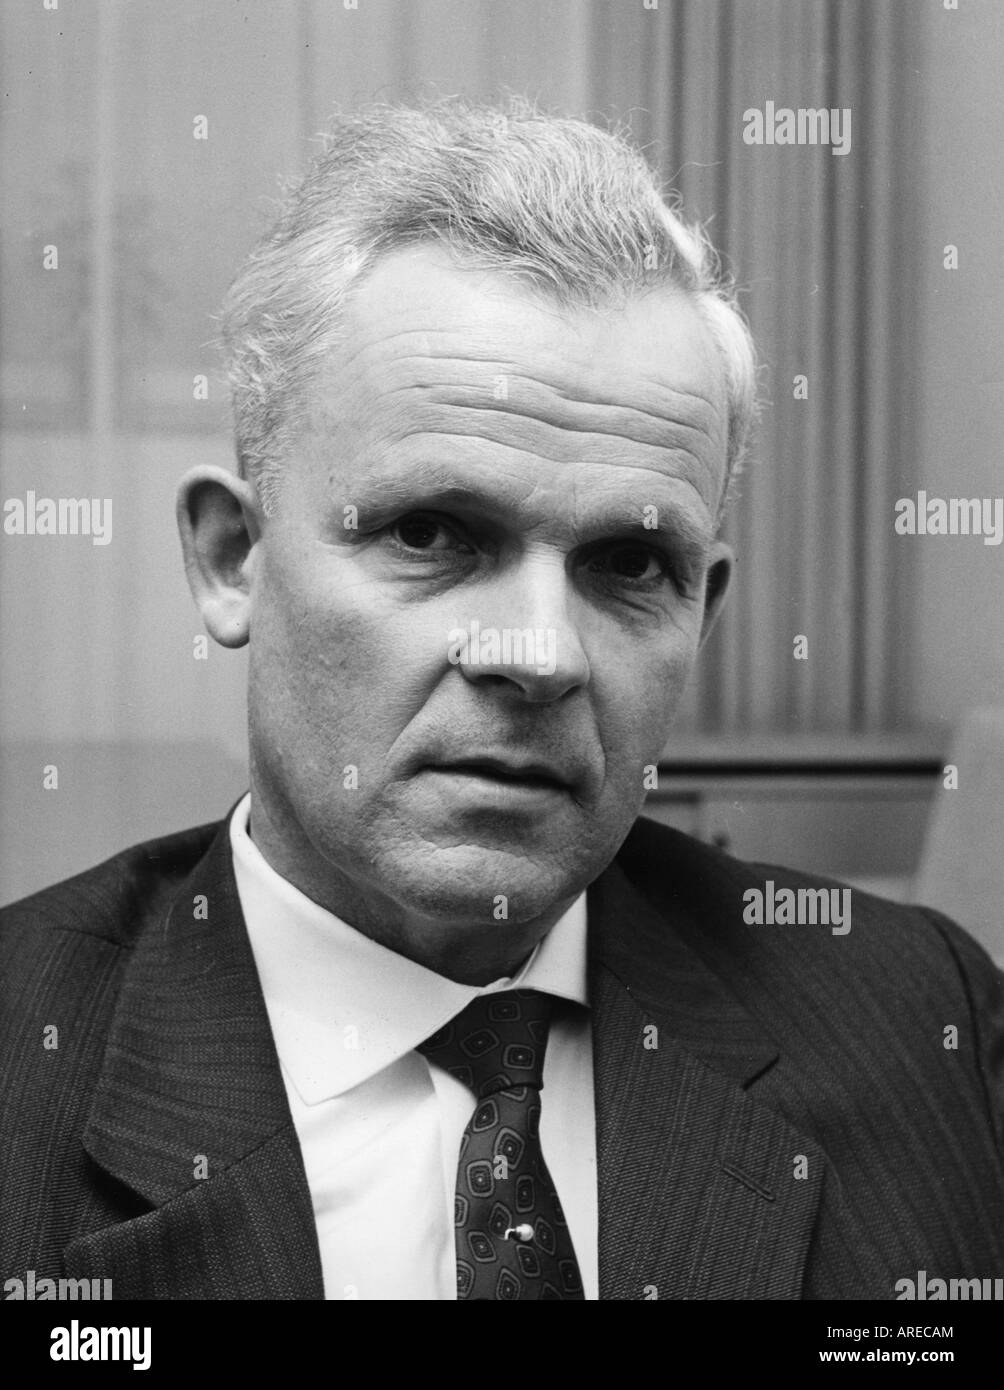 Bucher, Ewald, 19.7.1914 - 31. 10.1991, politico tedesco (FDP), Ministro federale della giustizia 11.12.1962 - 26.3.1965, ritratto, circa 1963, Foto Stock